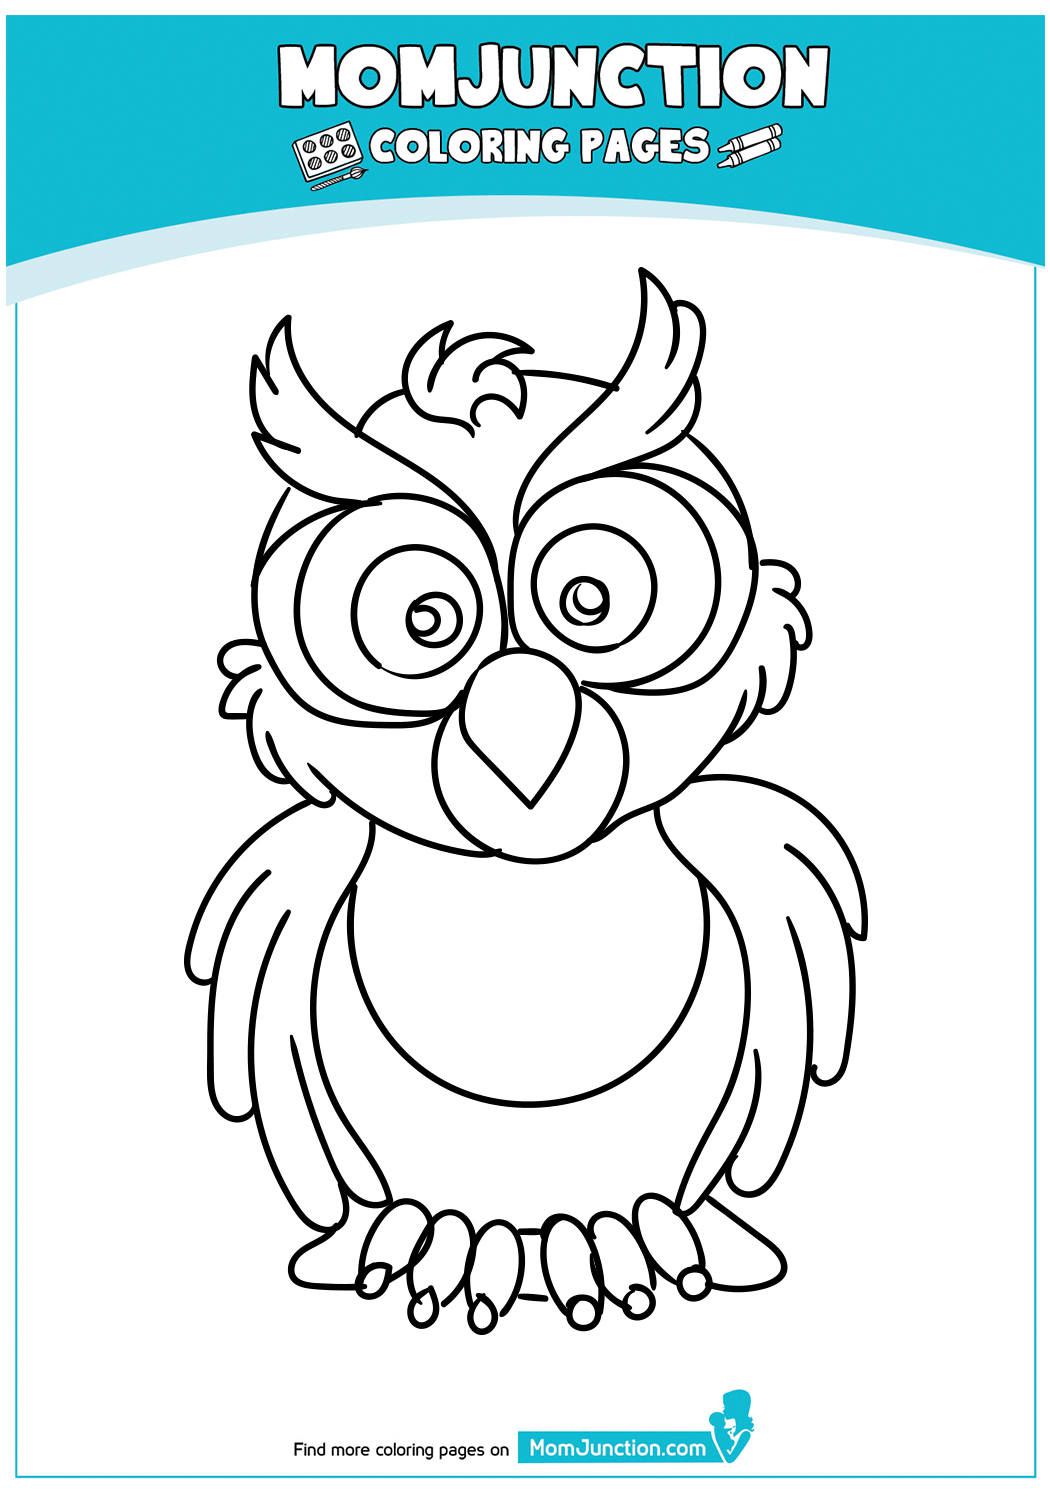 An-Owl-angry